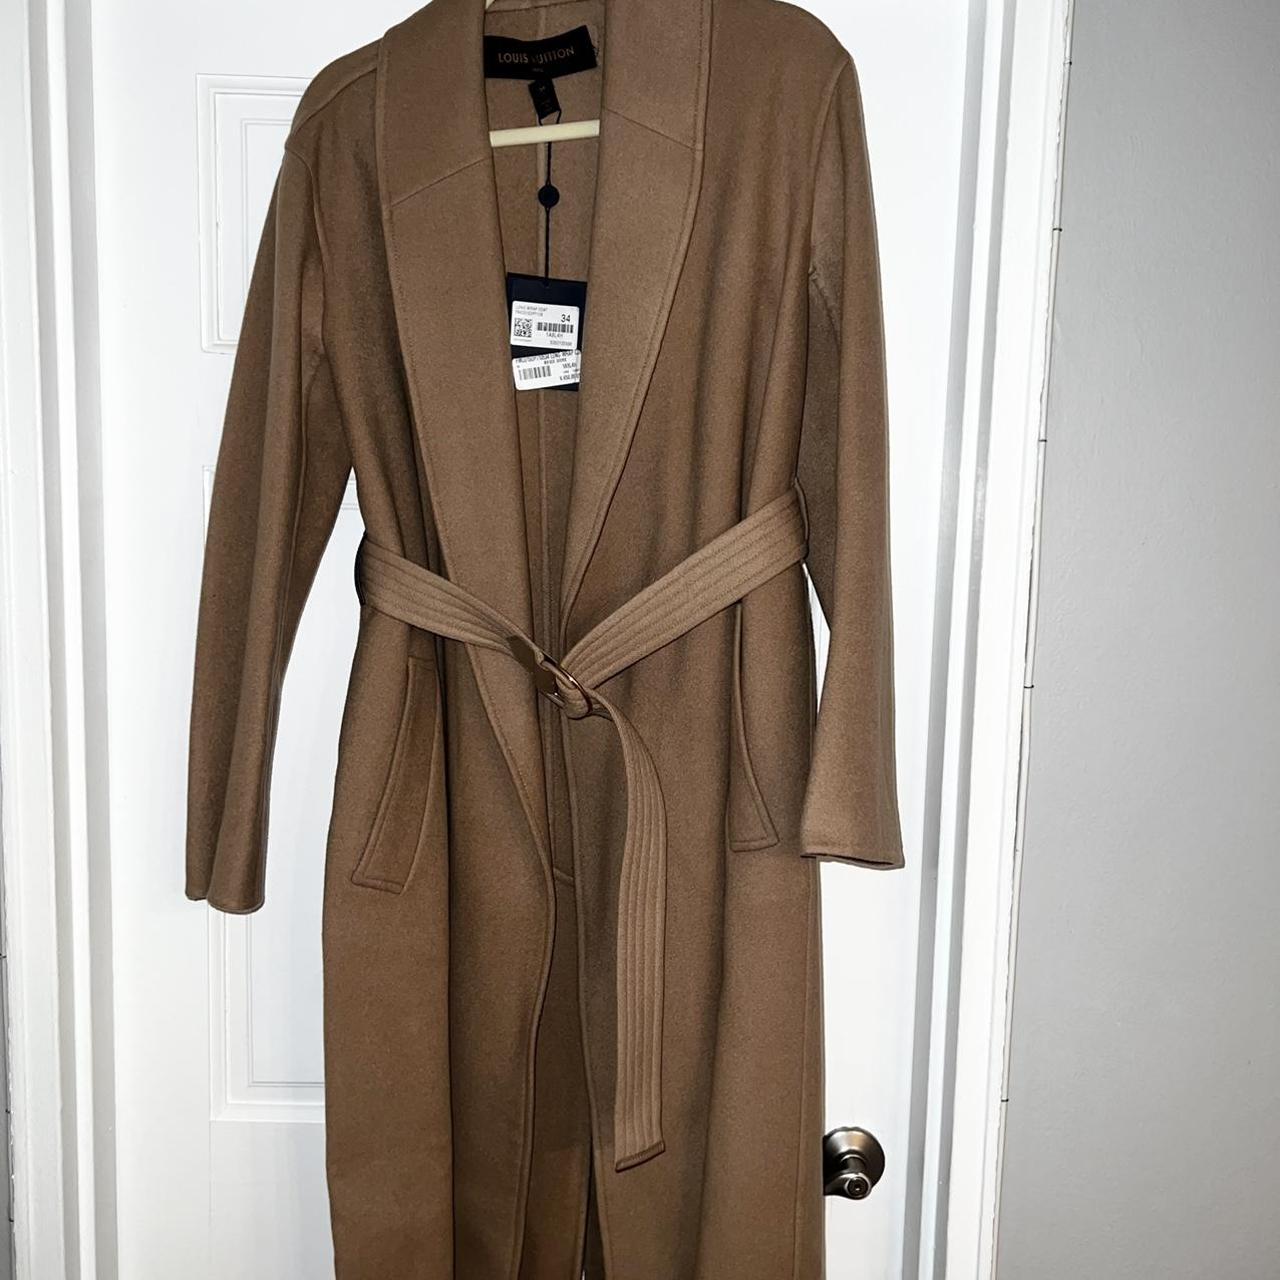 lv bathrobe for women